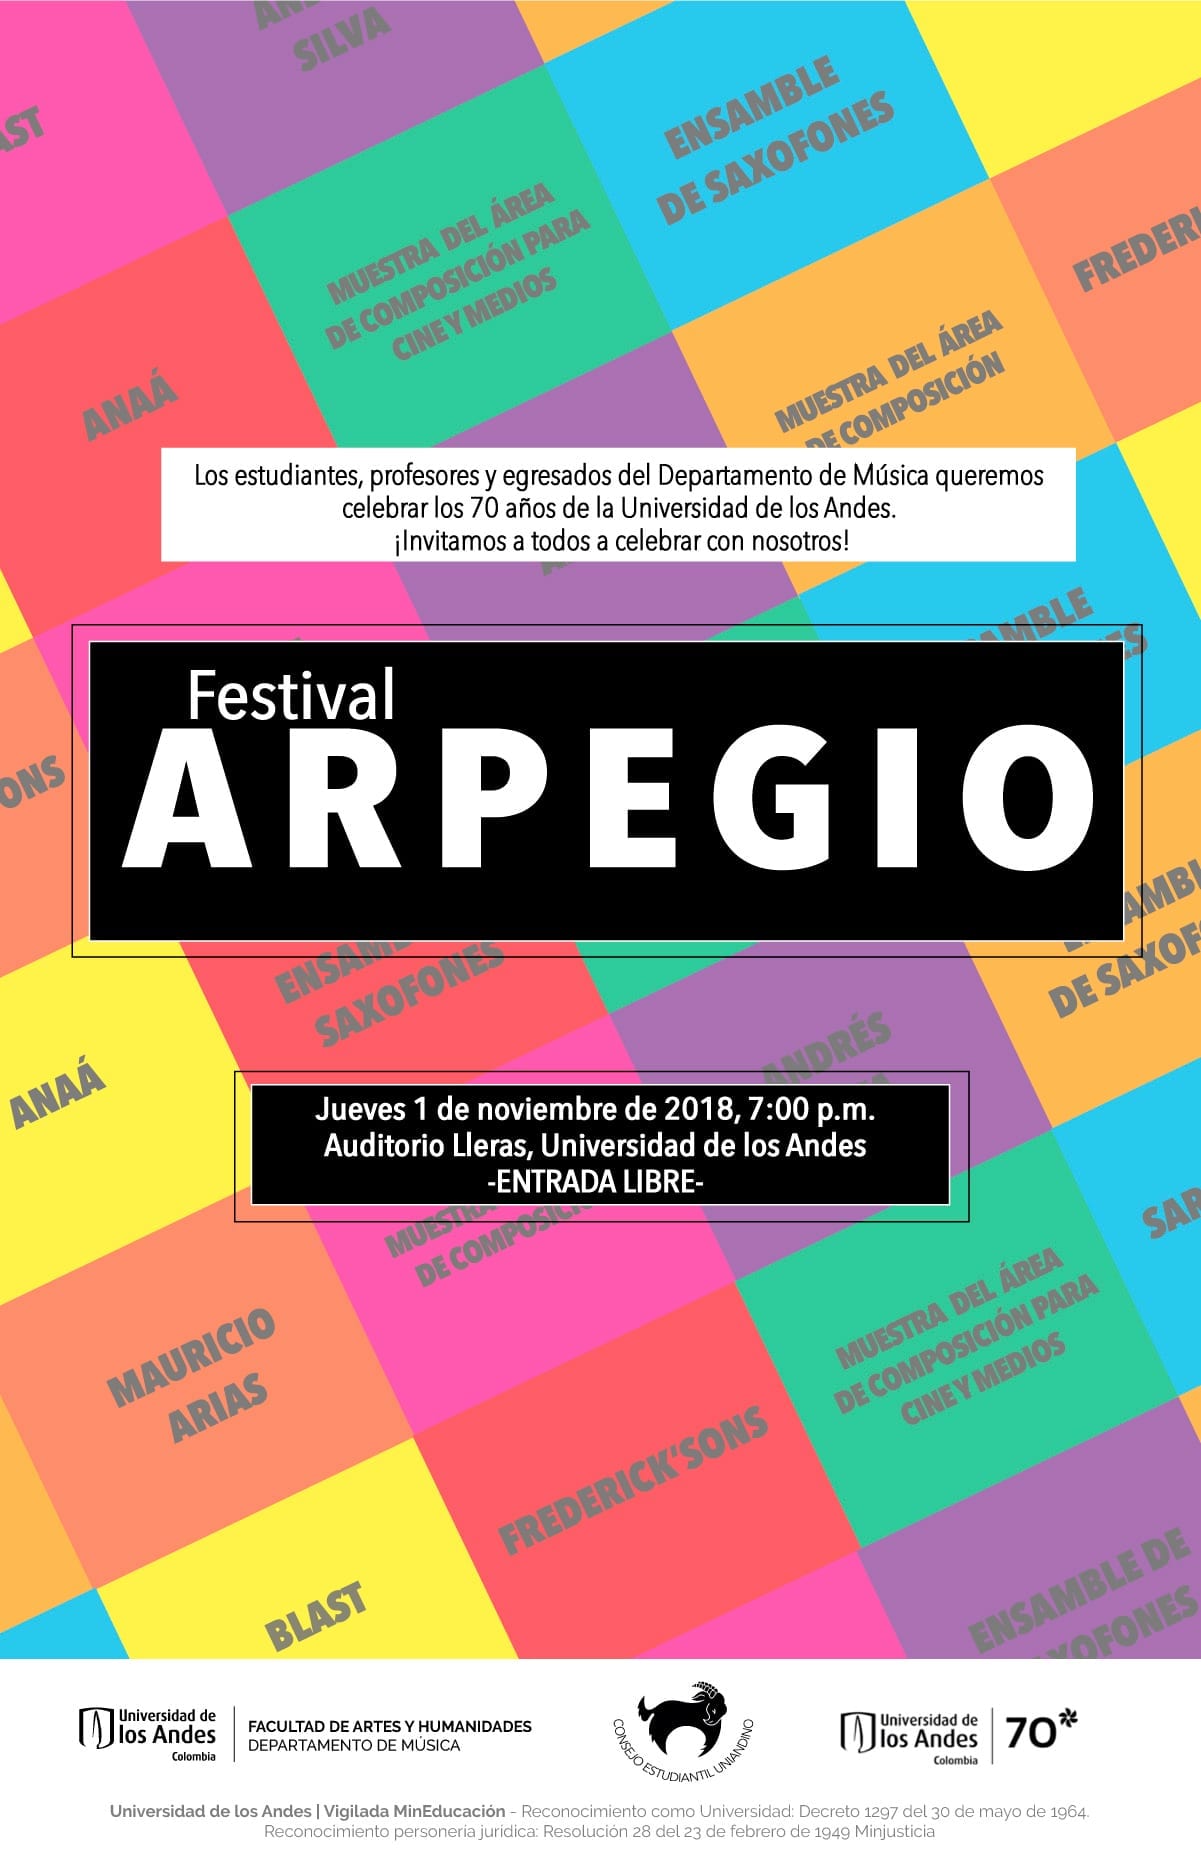 El jueves 1 de noviembre, a las 7:00 p.m. se realizará el concierto del Festival Arpegio.